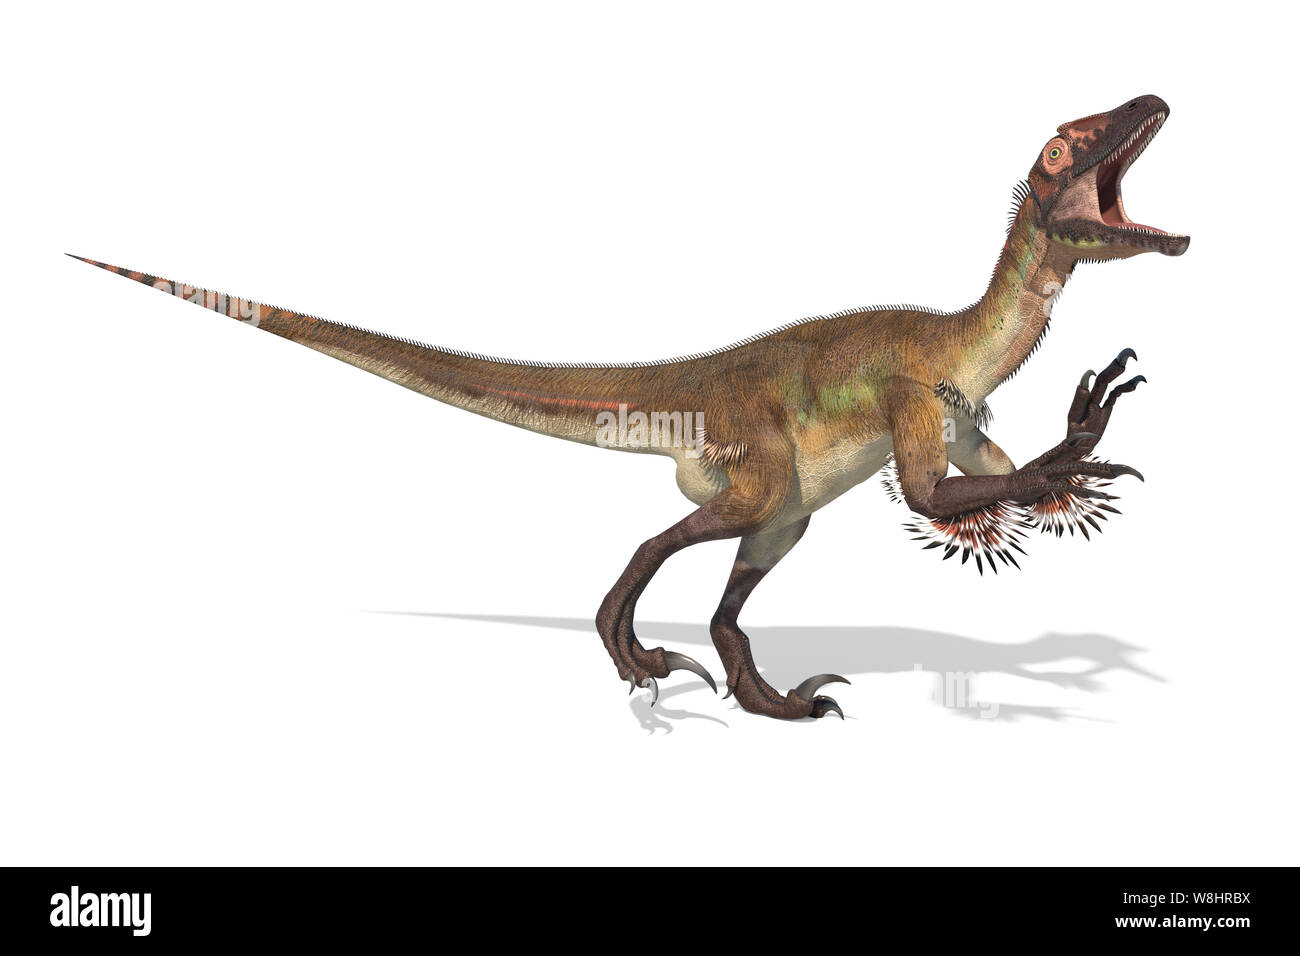 Dinosauro Utahraptor struttura scheletrica, illustrazione. Questi dinosauri vivevano durante l'inizio del periodo Cretaceo, circa 126 milioni di anni fa. Foto Stock